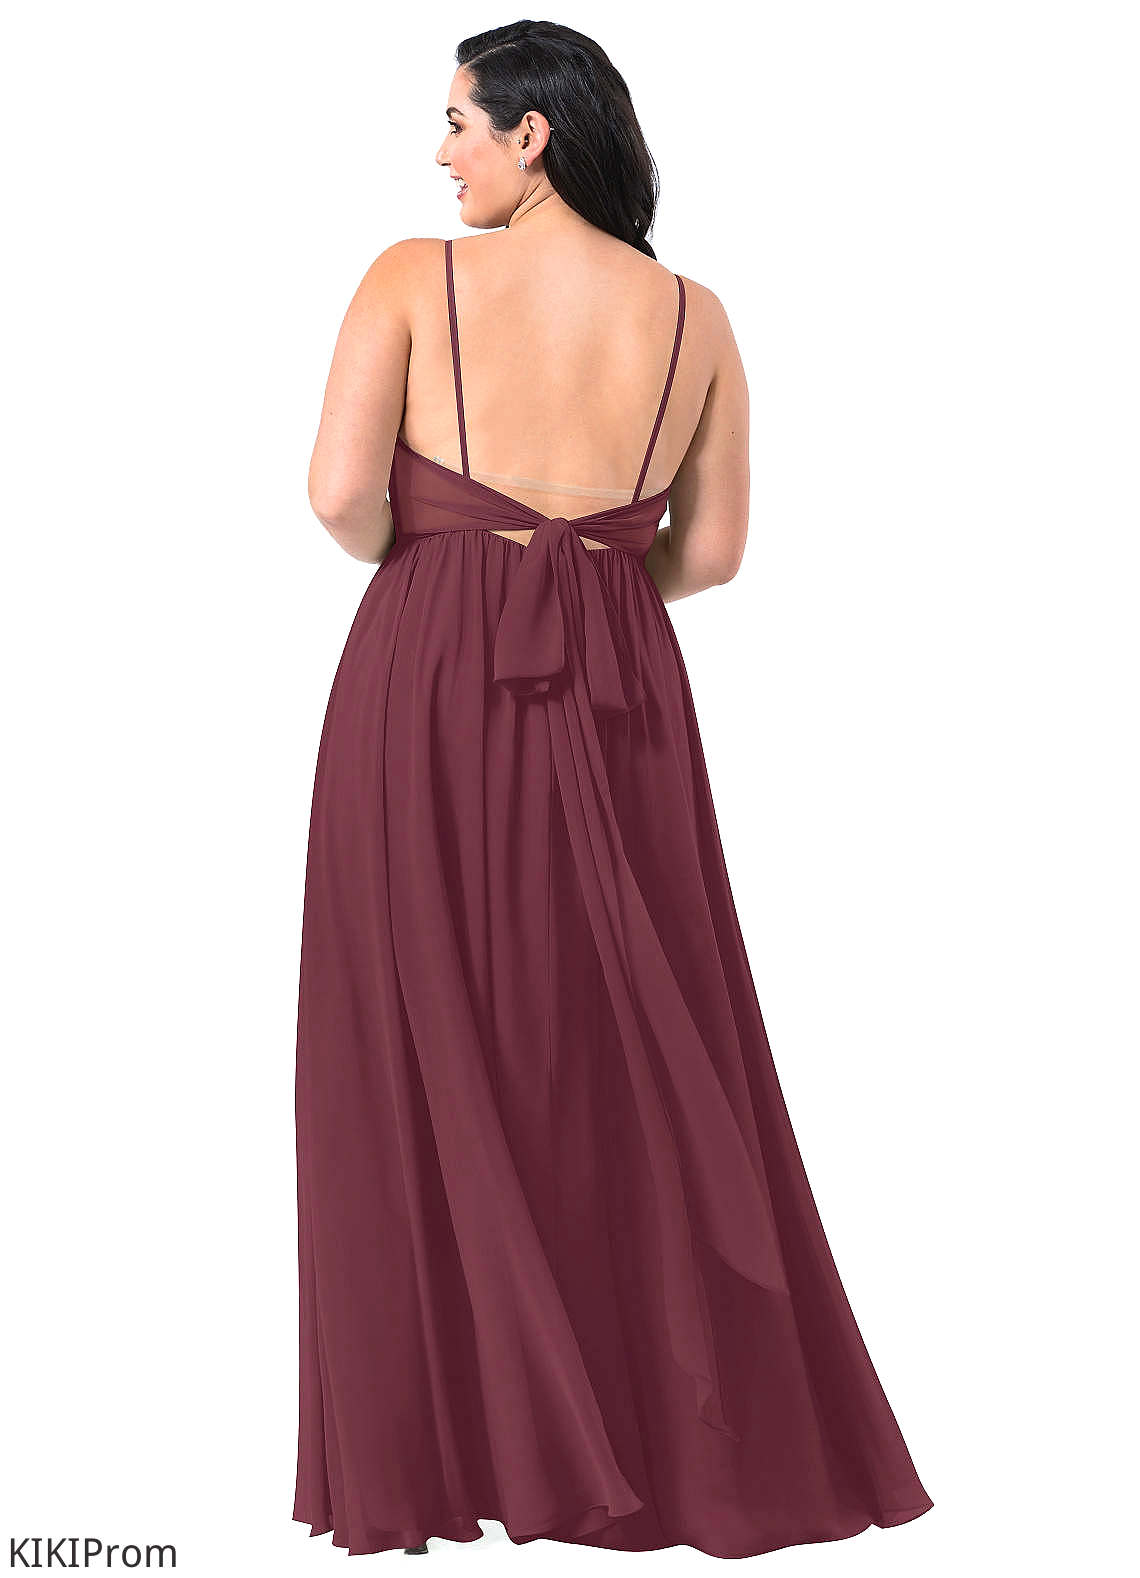 Emery Natural Waist A-Line/Princess Floor Length Sleeveless V-Neck Bridesmaid Dresses